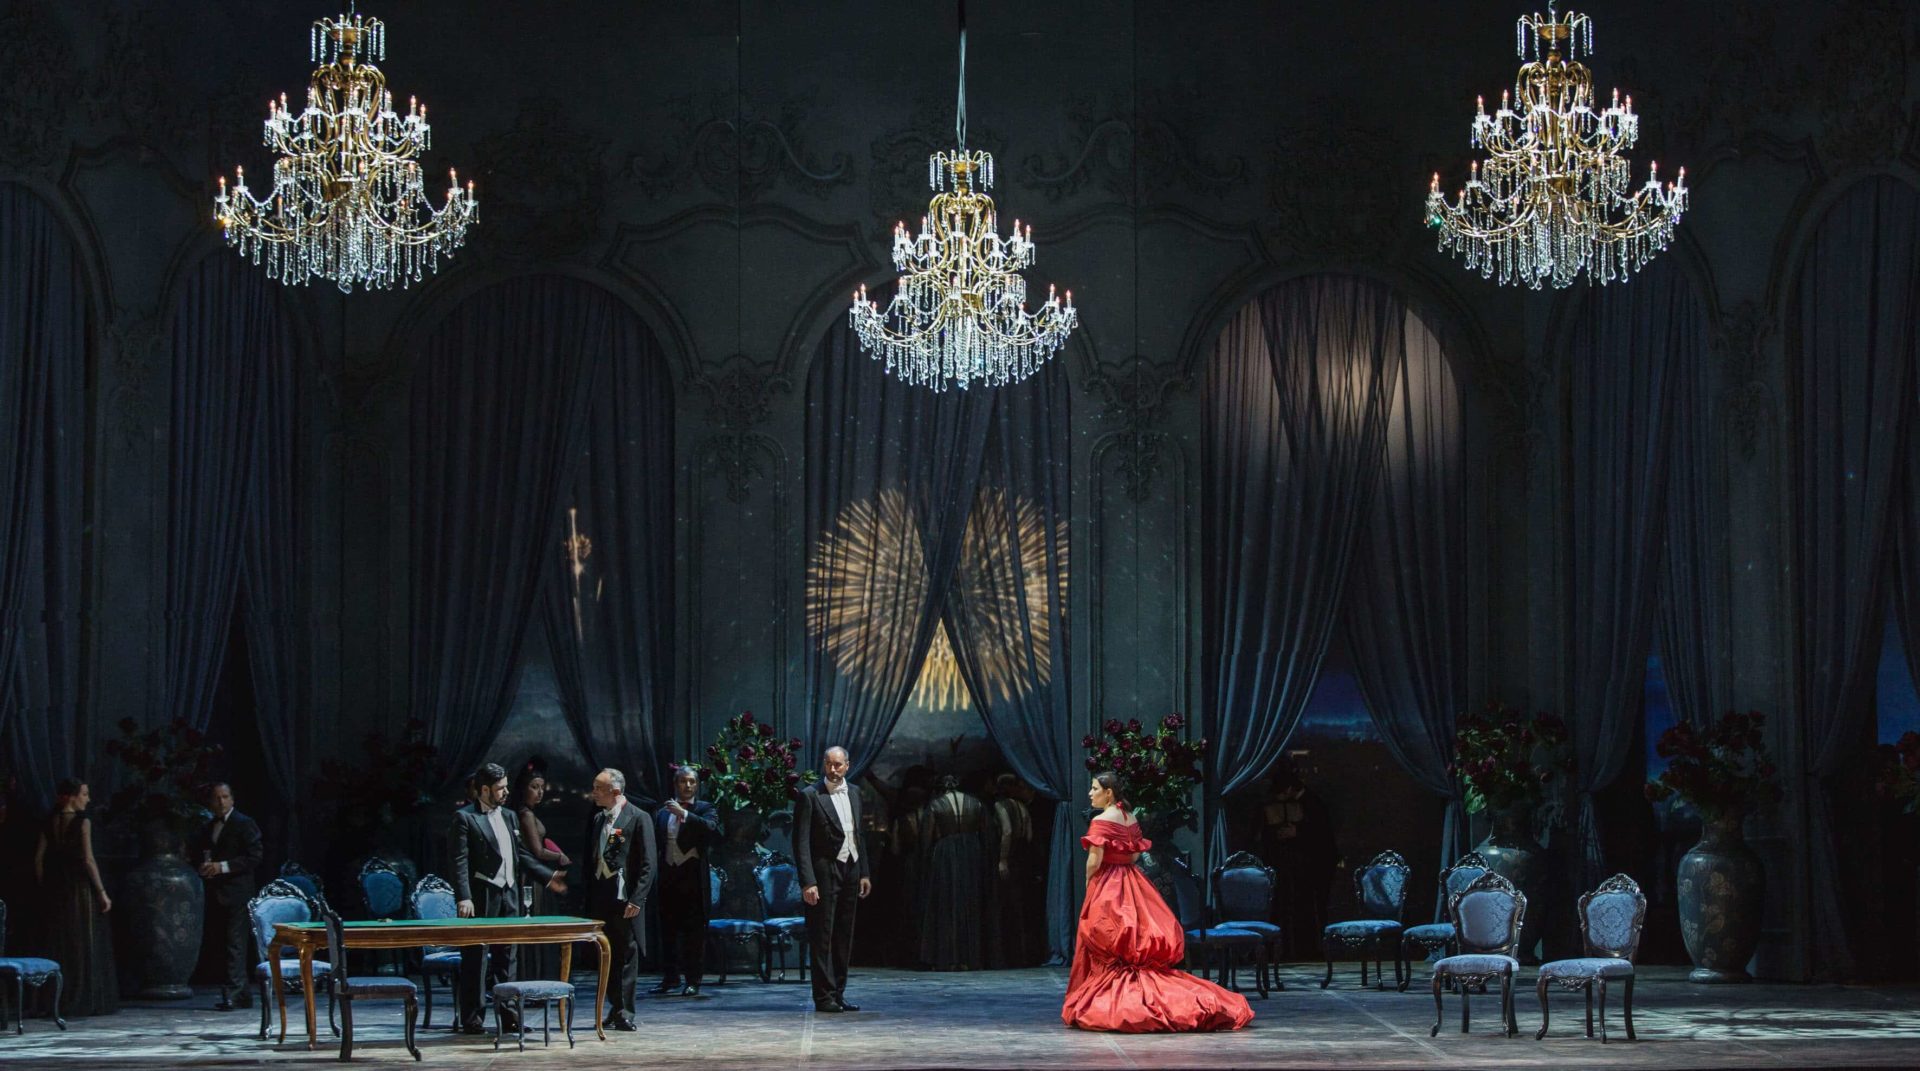 Lire la suite à propos de l’article La traviata, Opéra de Giuseppe Verdi à Anthea Antibes